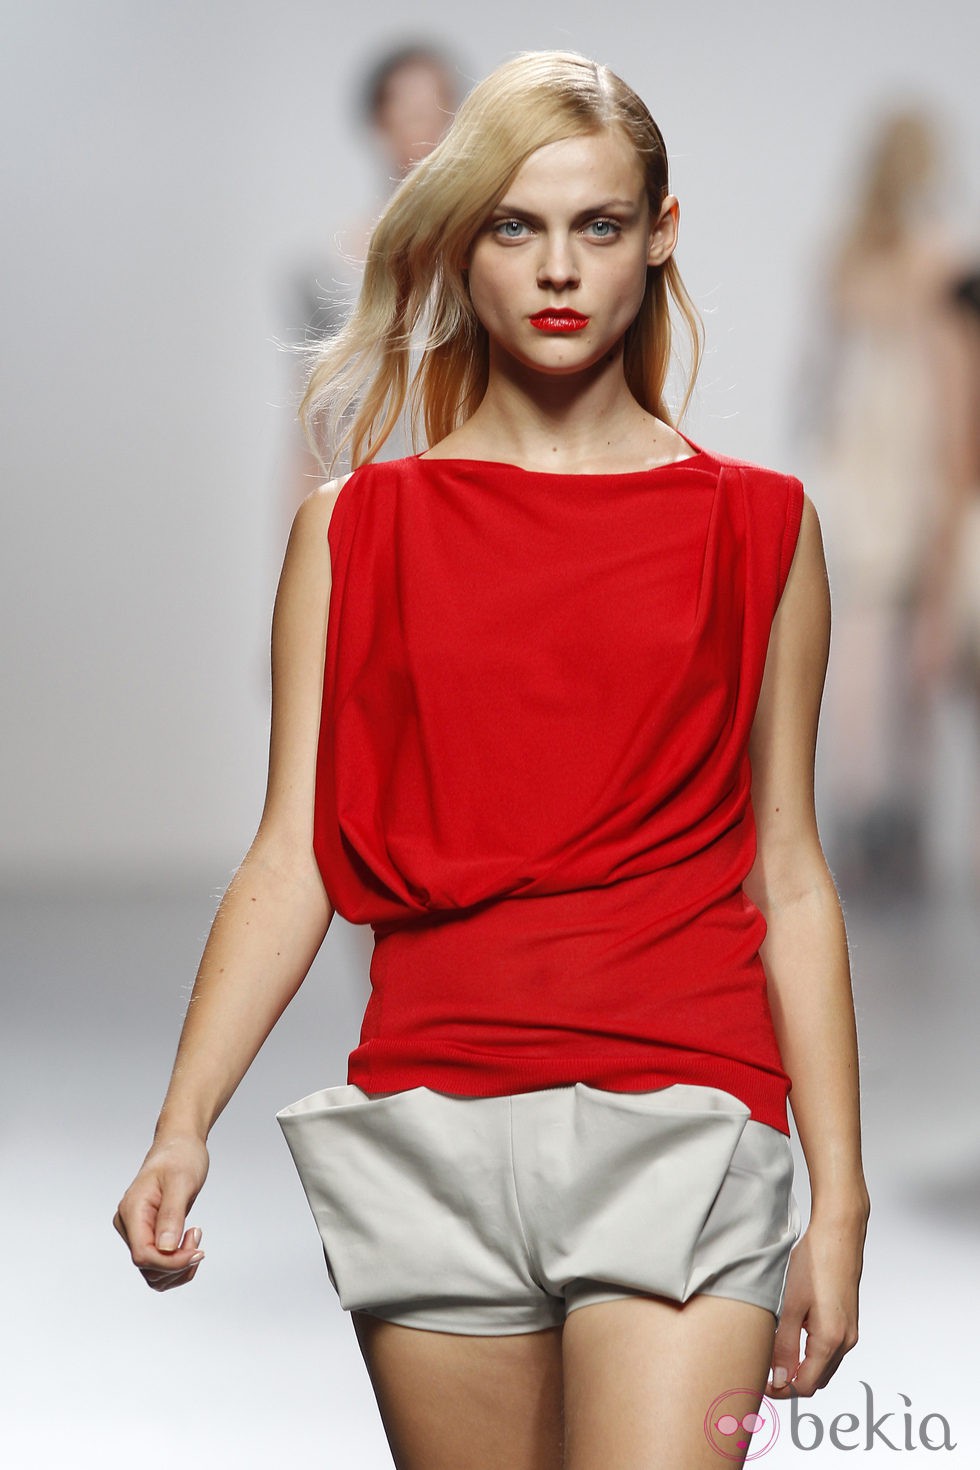 Top rojo y short blanco de Amaya Arzuaga en Cibeles, colección primavera de 2012